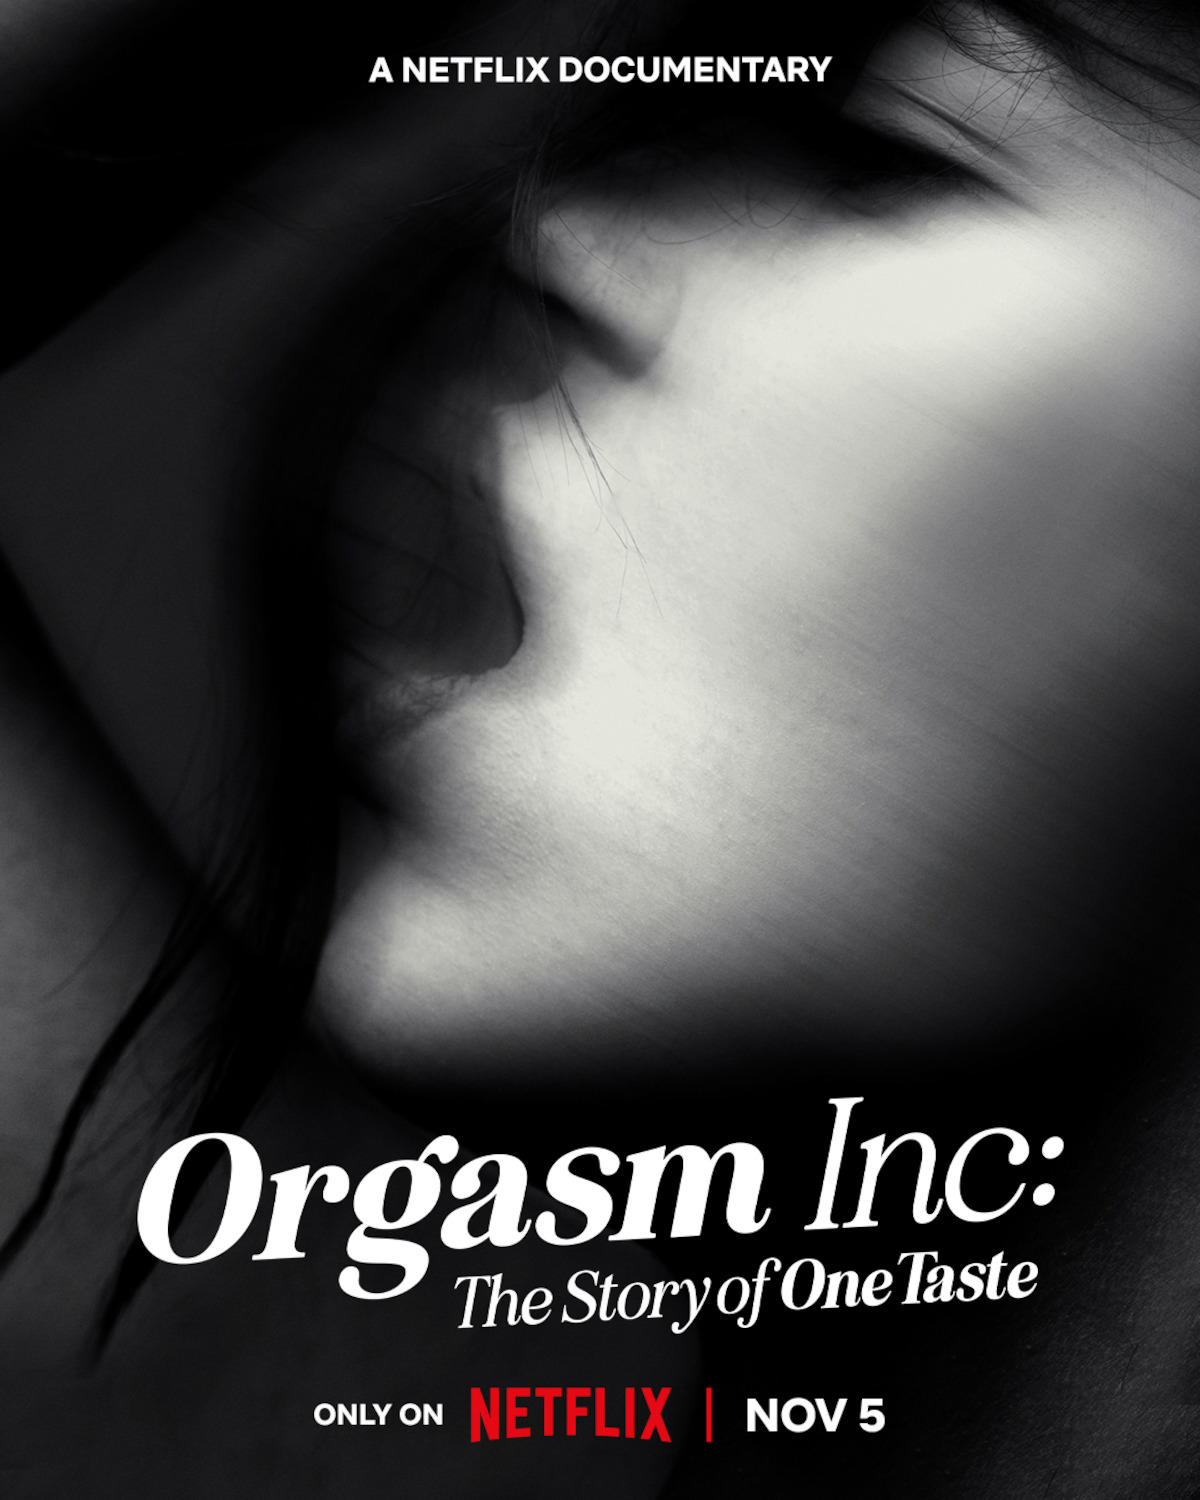 OneTaste Documentary About Nicole Daedone Orgasm Inc. image pic